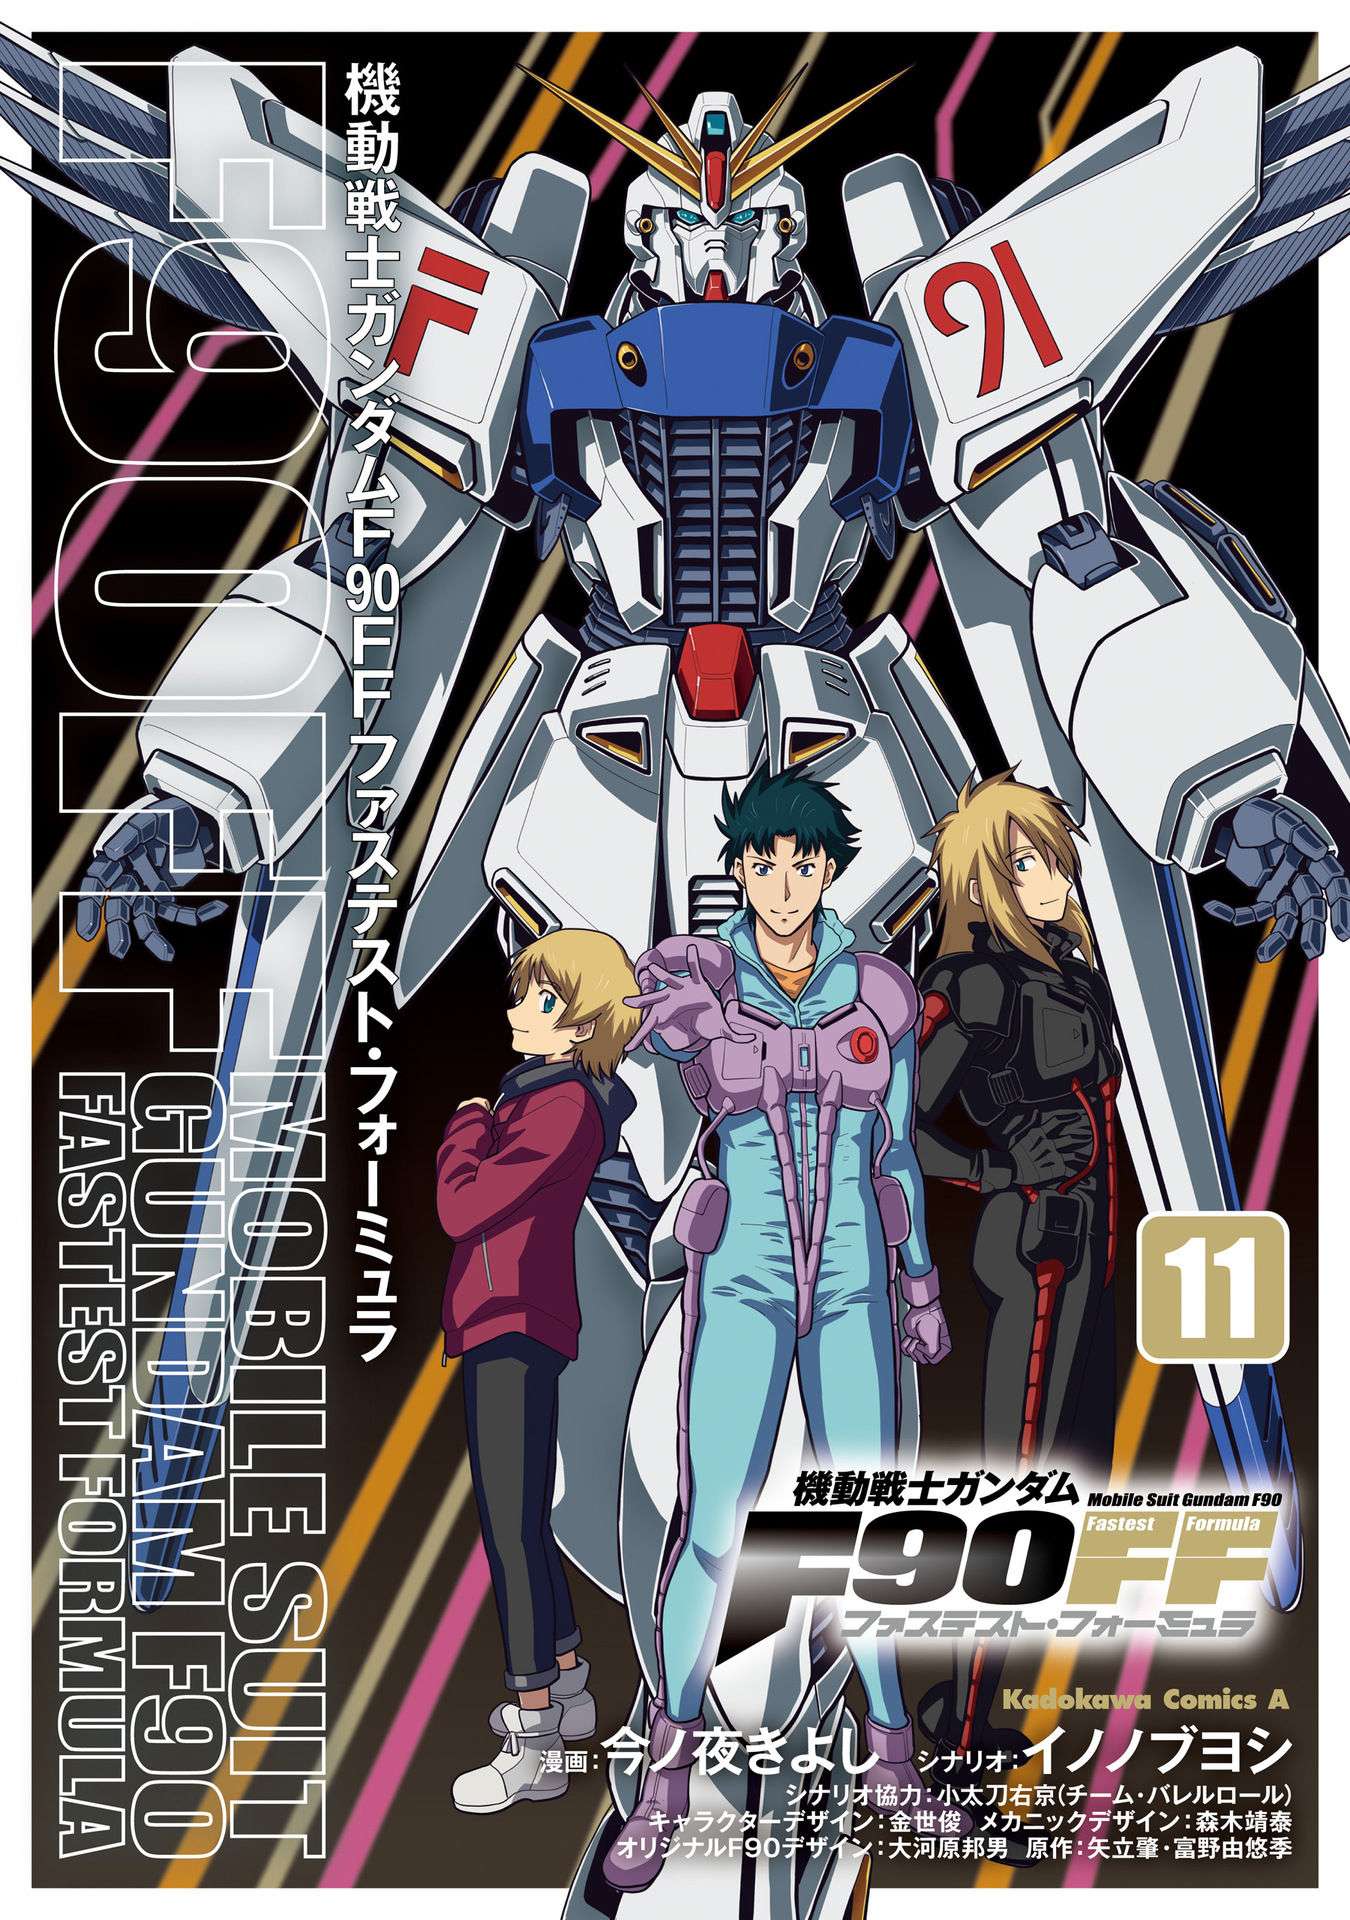 Kidou Senshi Gundam F90 FF - chapter 42 - #1